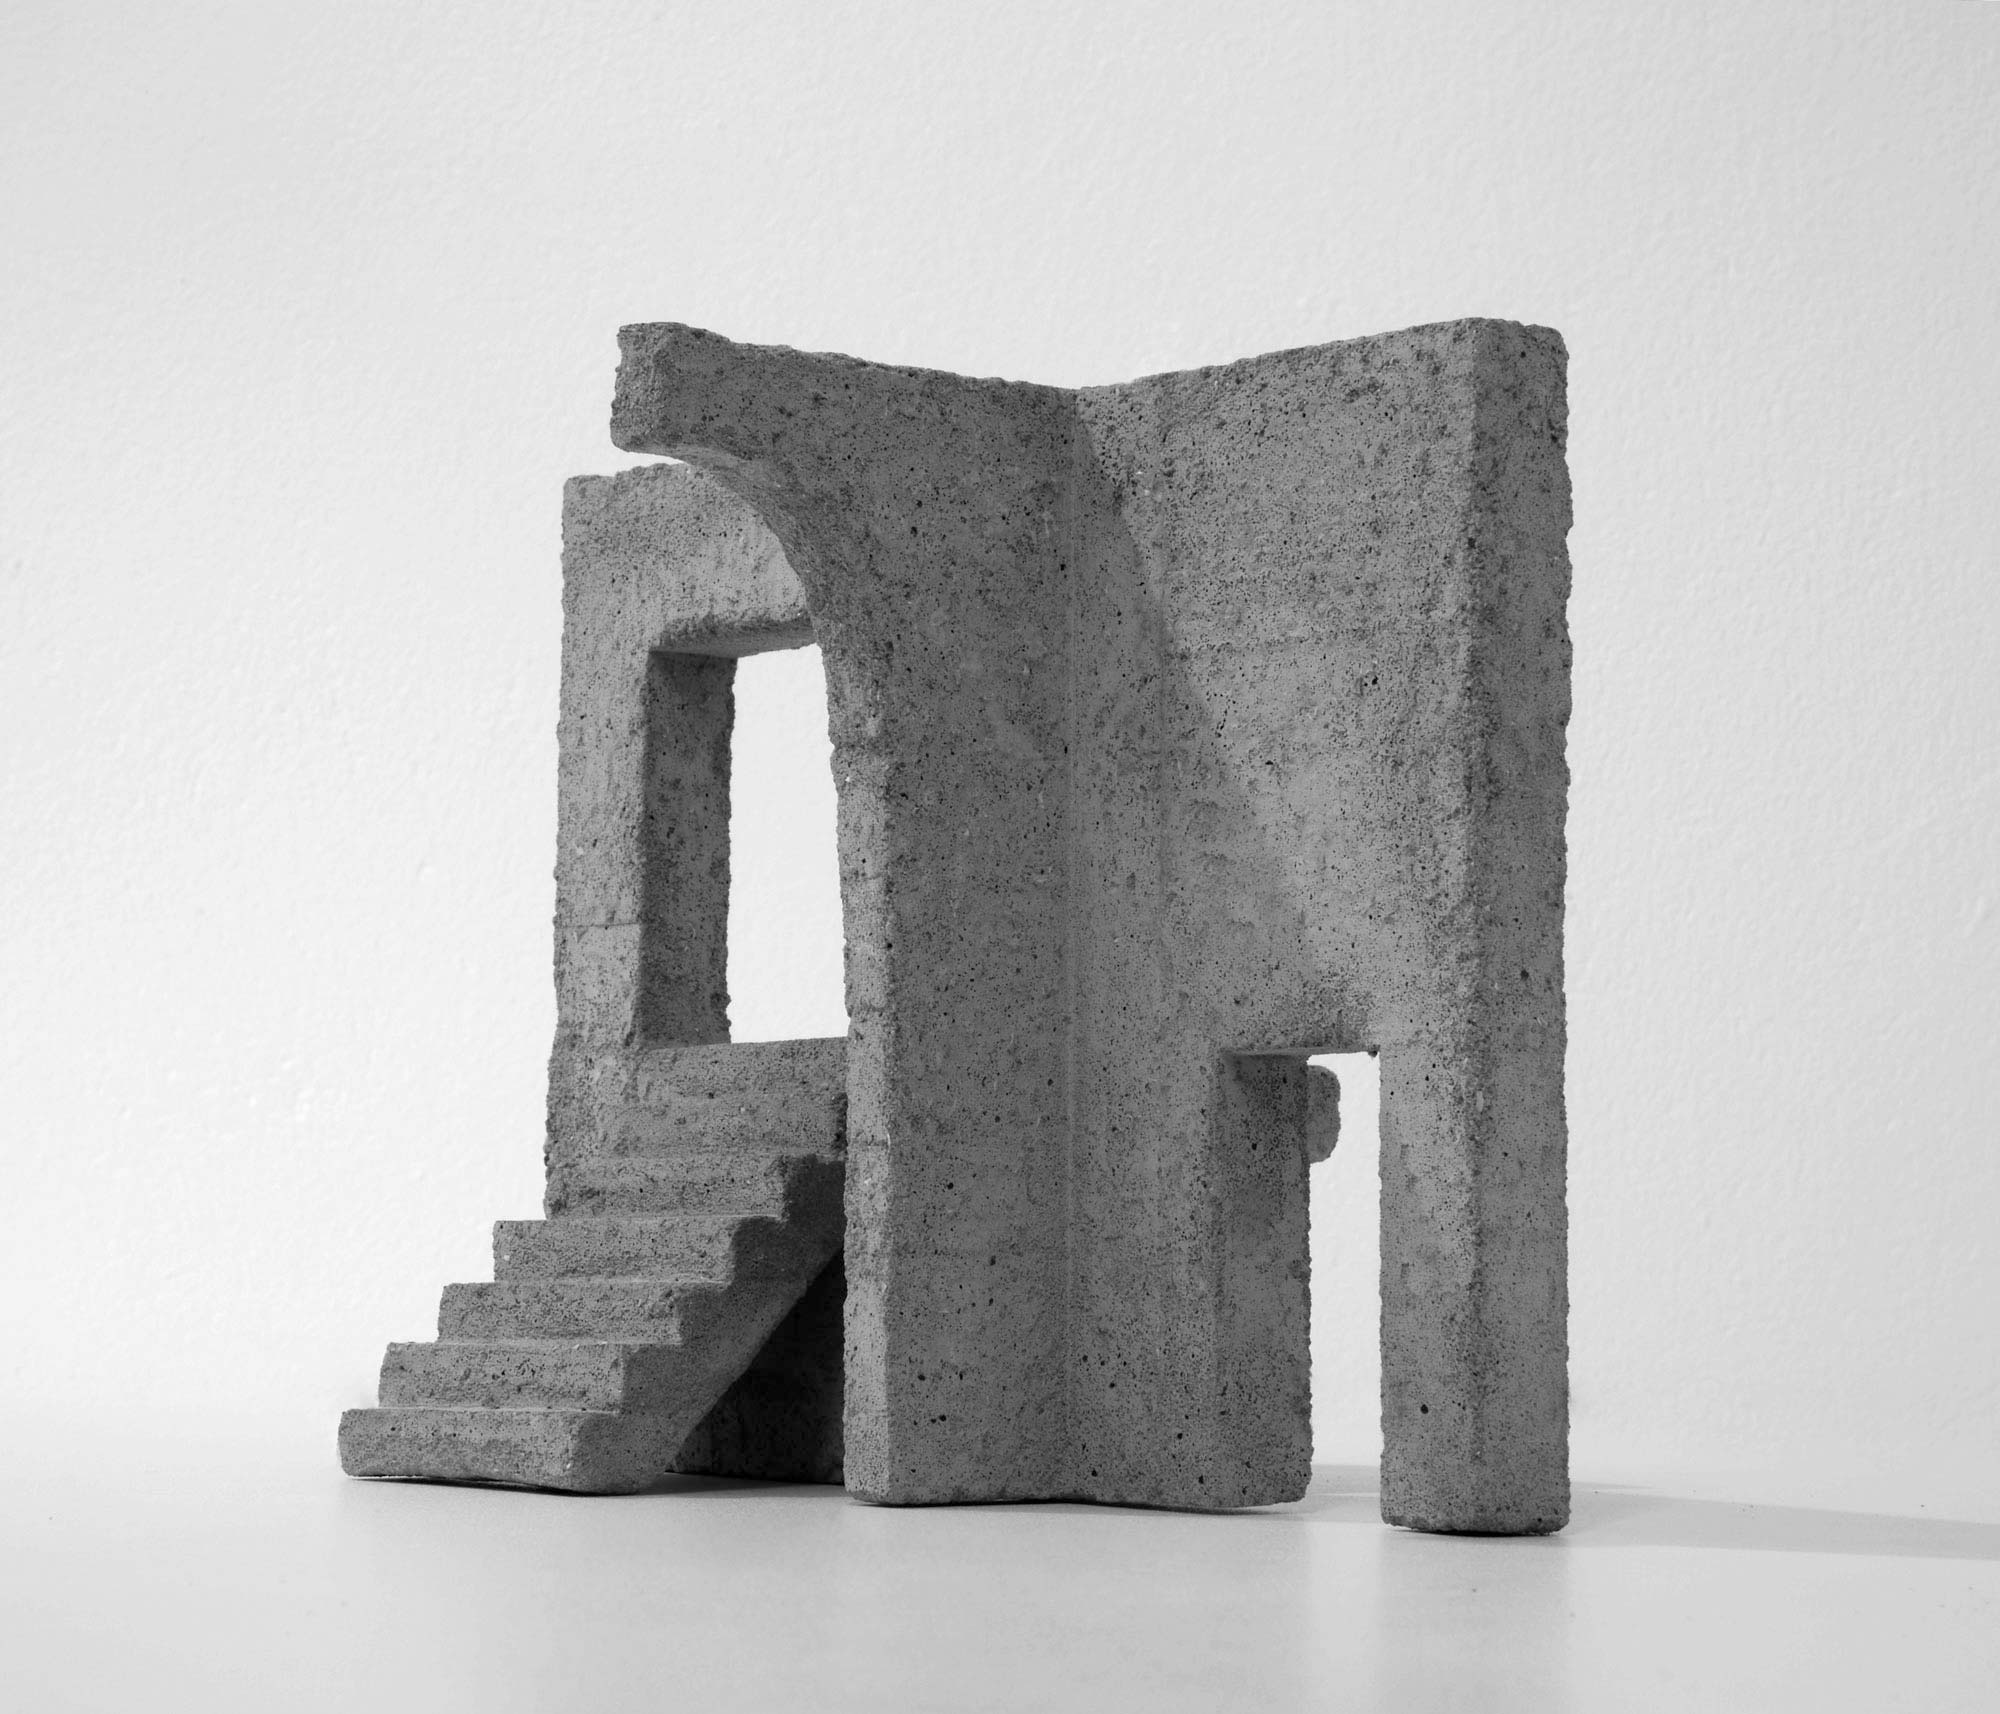 mattia listowski art design objet décoration sculpture béton moulage micro architecture maquette passage 2 édition limitée numérotée signée paris bruxelles 2019